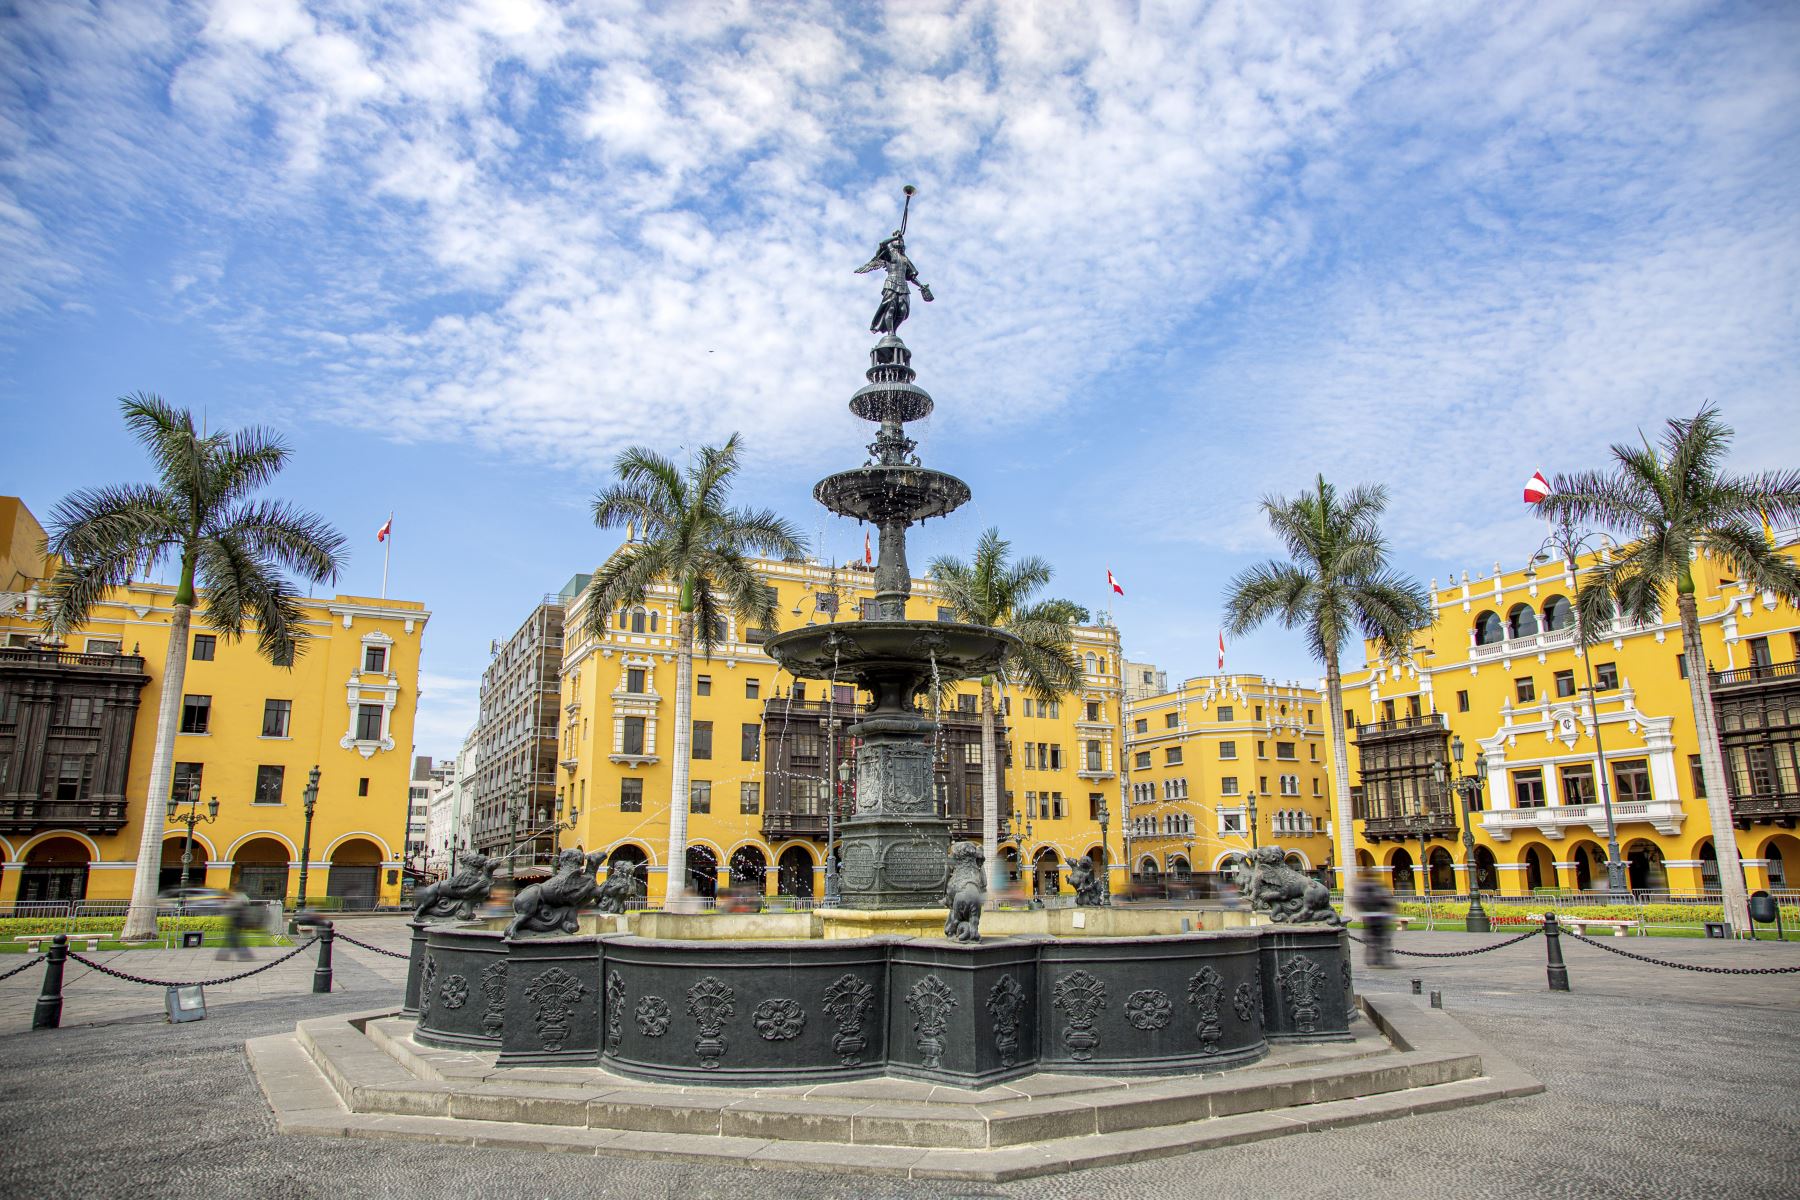 Plazas, documentos y monumentos de Lima Metropolitana se muestran en el marco de las celebraciones por el Bicentenario de la independencia. En la imagen, plaza mayor, plaza de armas de lima. Foto: Municipalidad de Lima